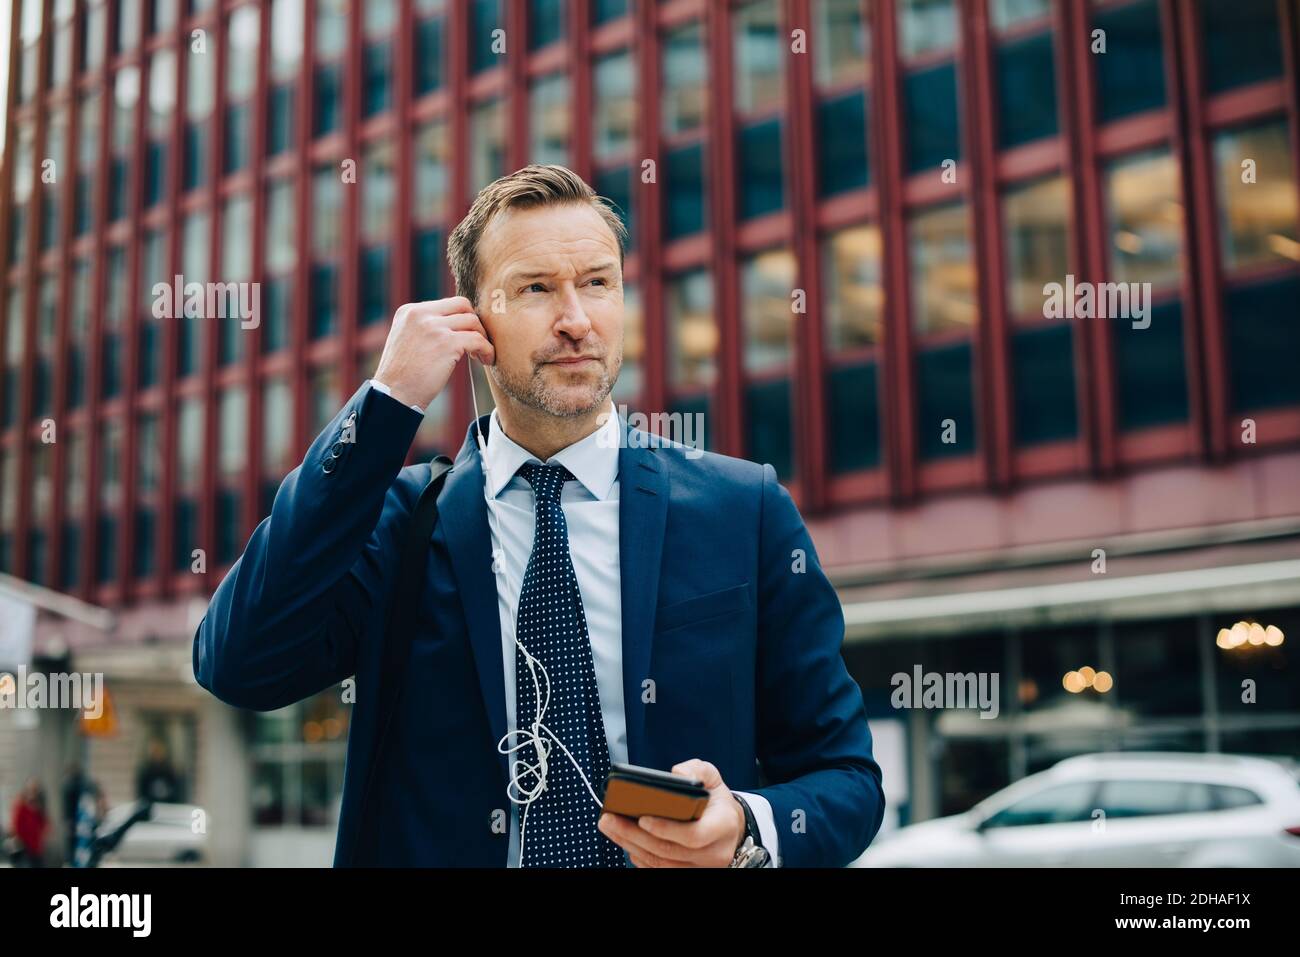 Cuffie intrauricolari per il posizionamento di un uomo d'affari maturo mentre si guarda lontano dagli edifici in città Foto Stock